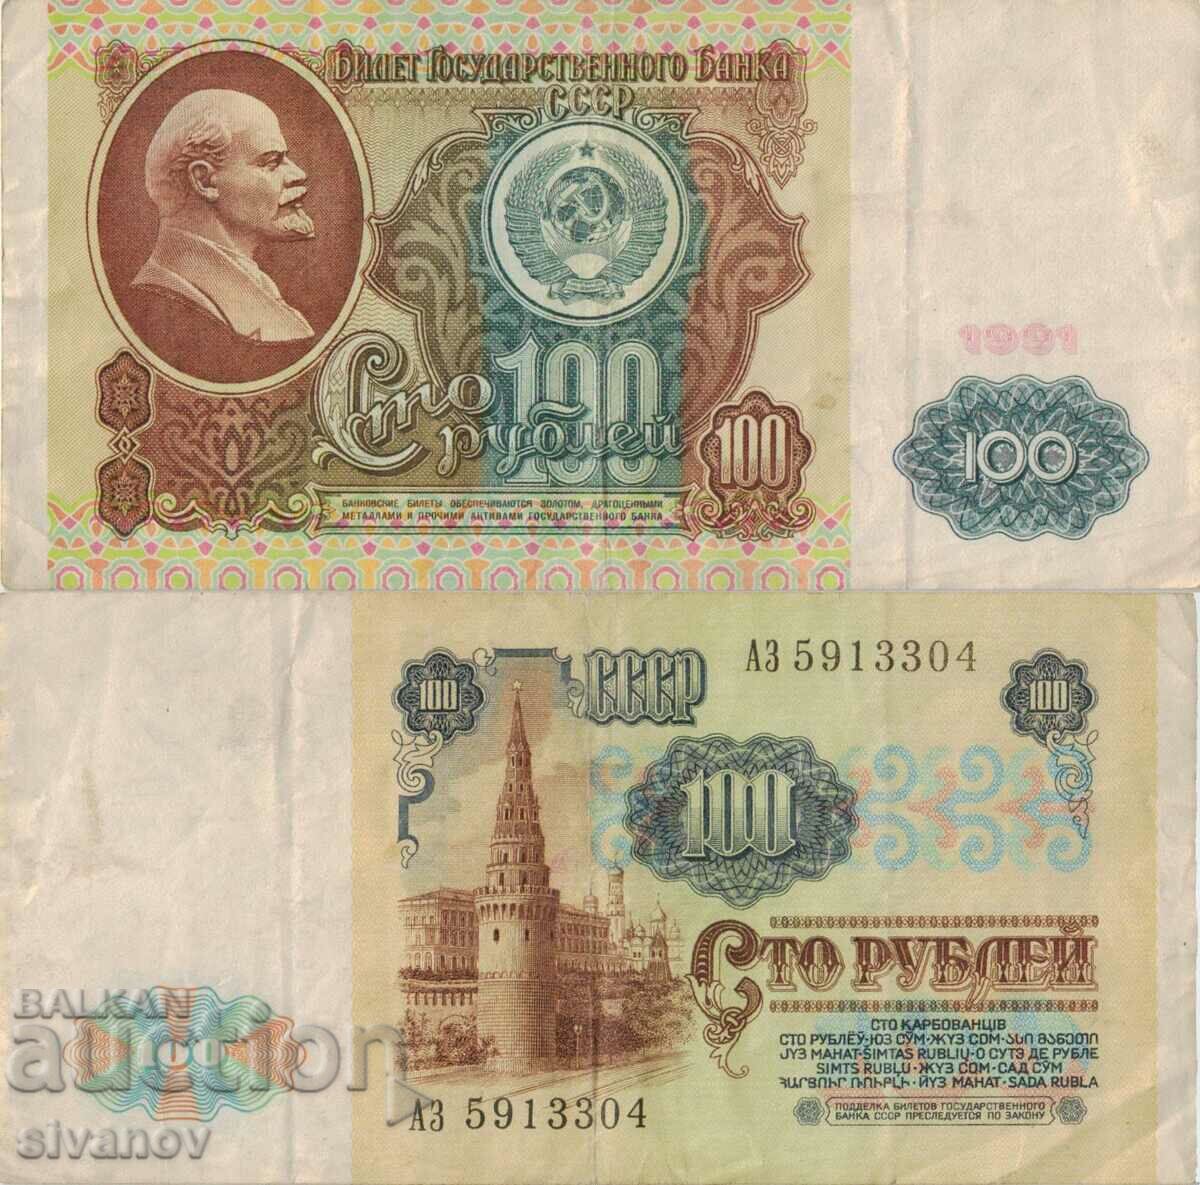 Σοβιετική Ένωση Ρωσία ΕΣΣΔ Τραπεζογραμμάτιο 10 ρούβλια 1991 #5352